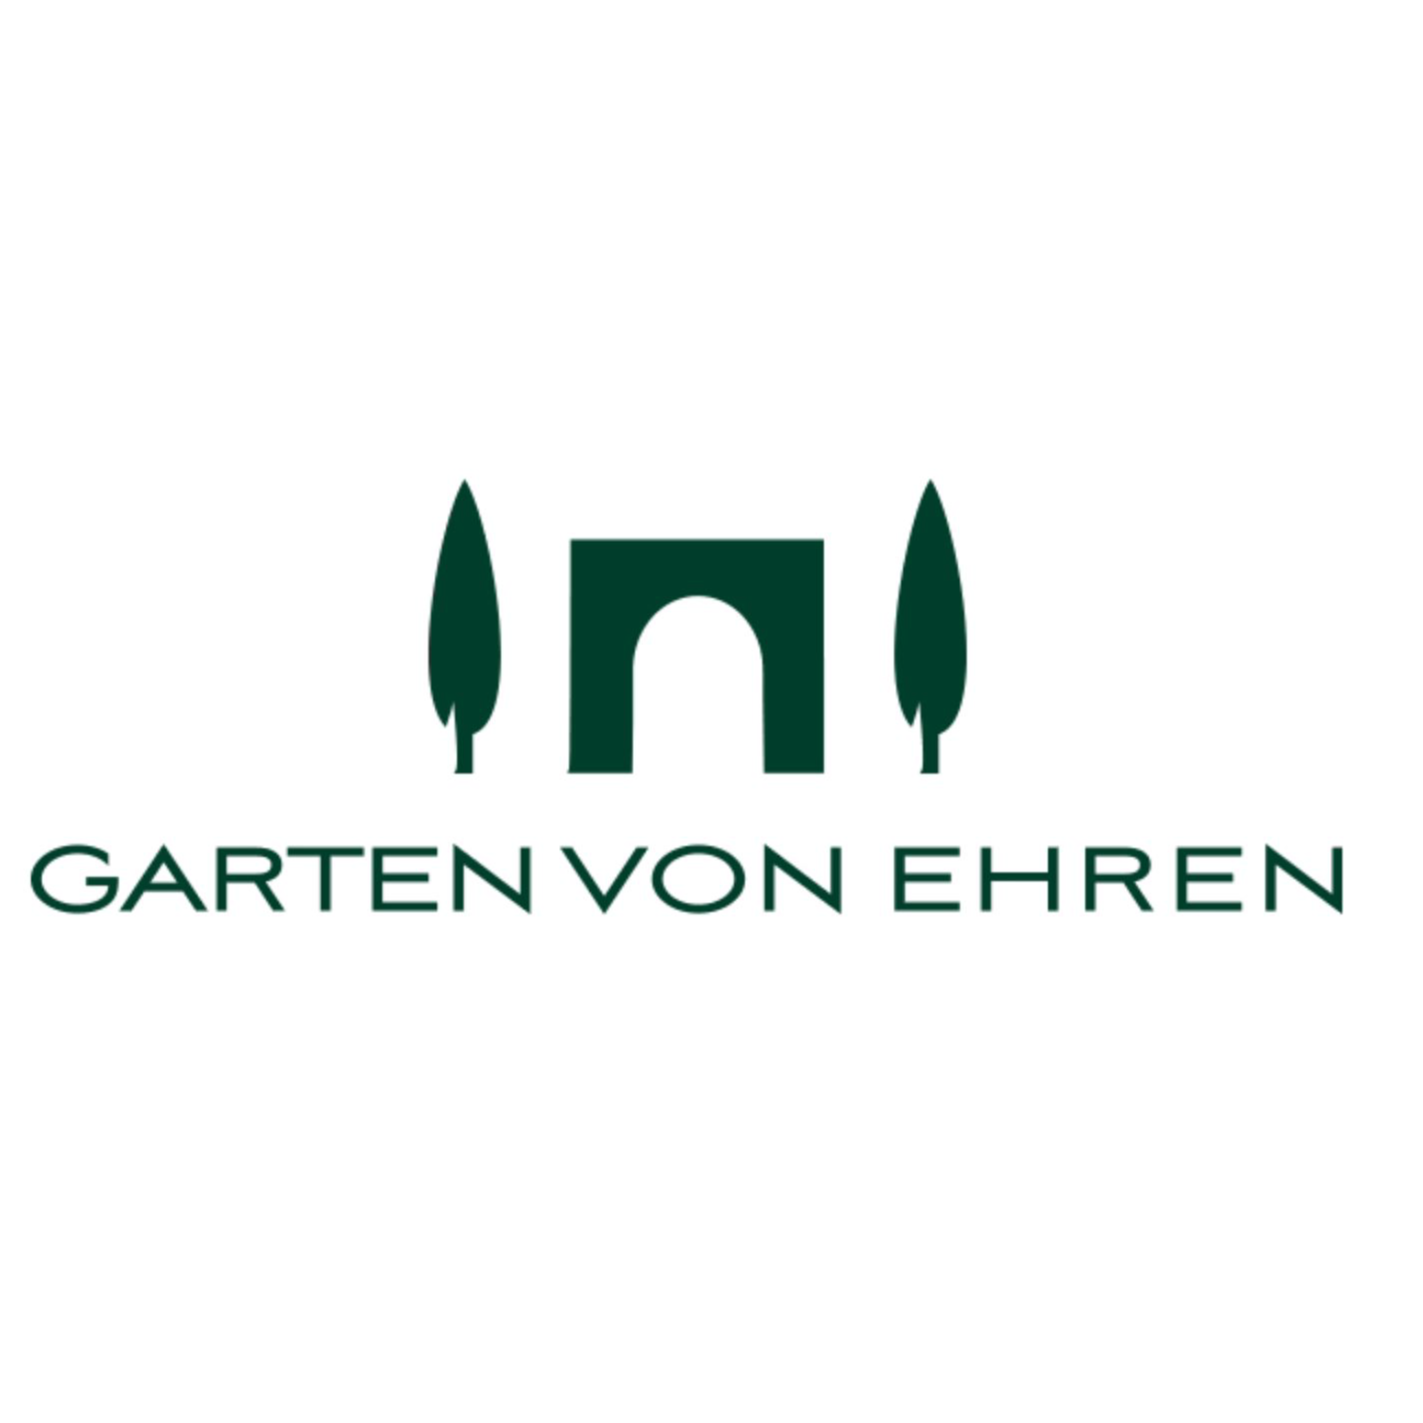 Johs. von Ehren Garten GmbH & Co.KG in Hamburg - Logo